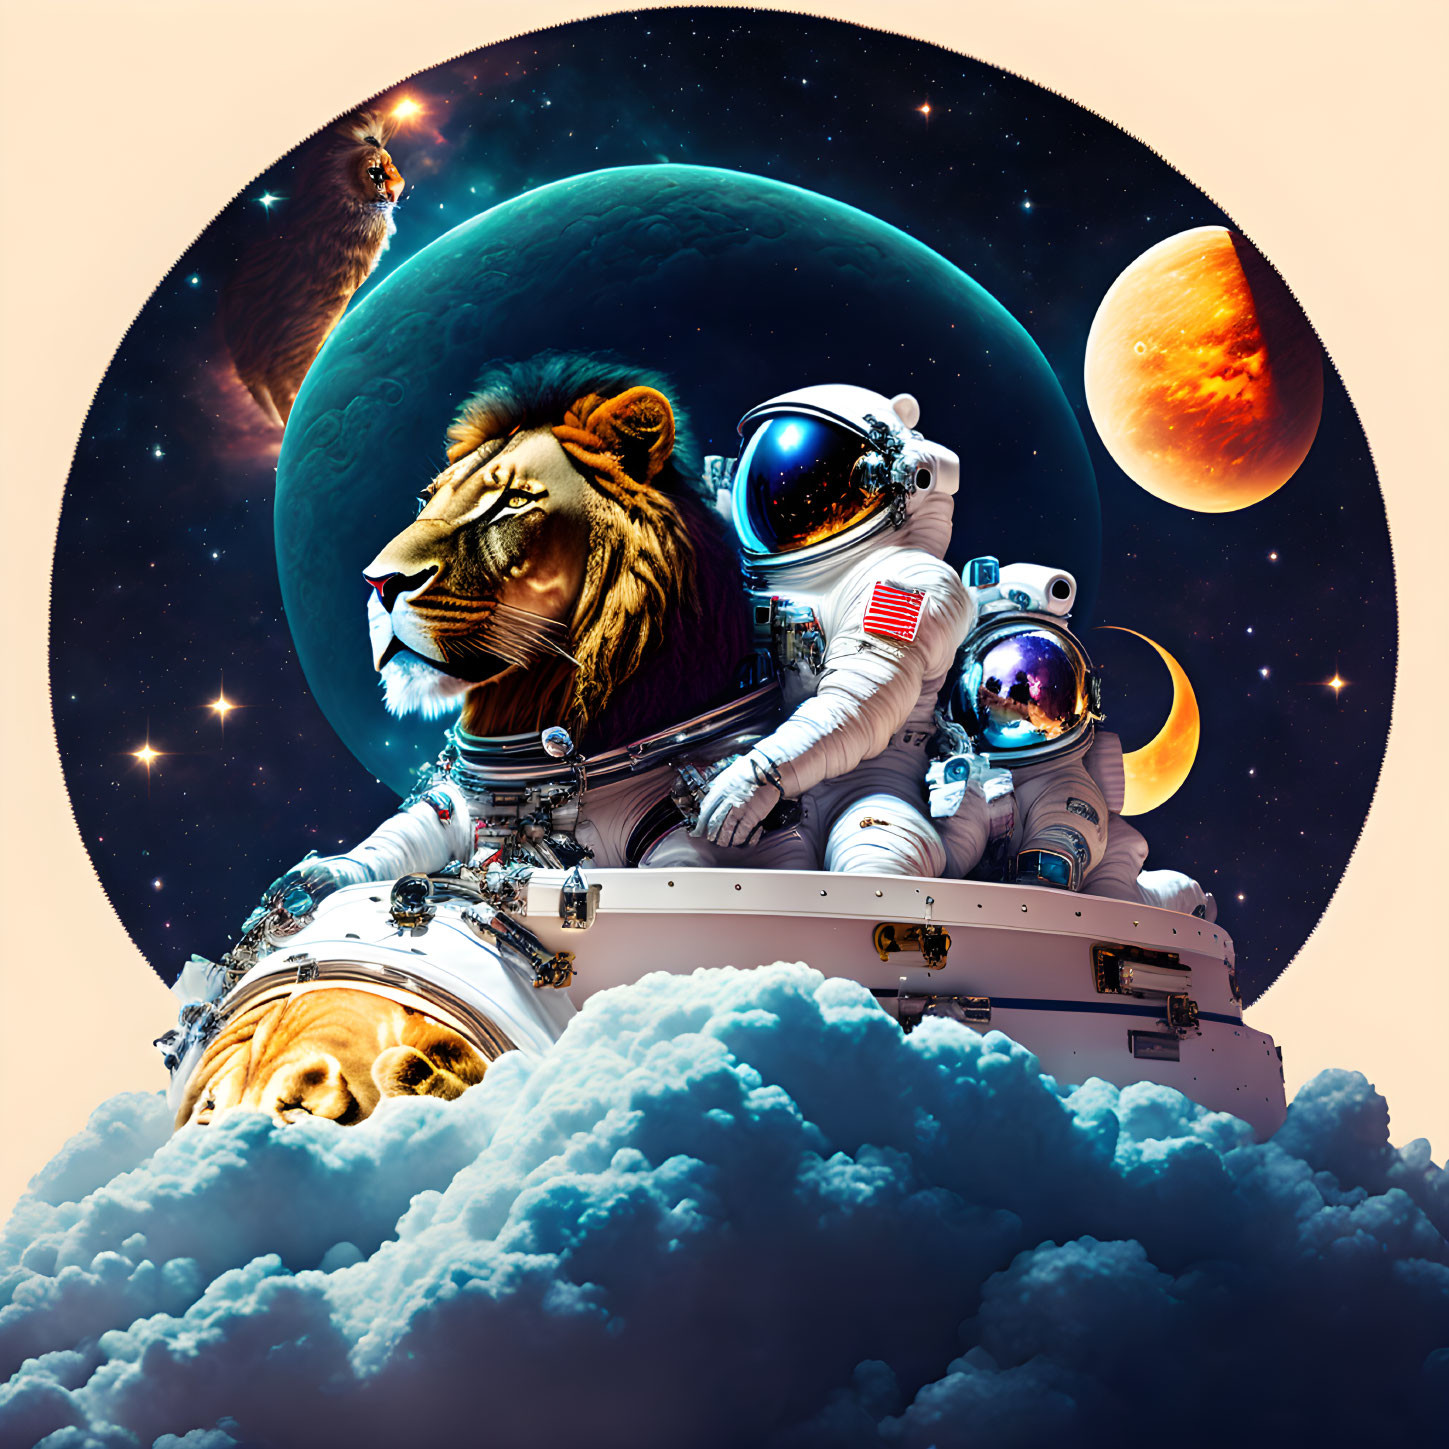 An astronaut rides a lion to Jupiter